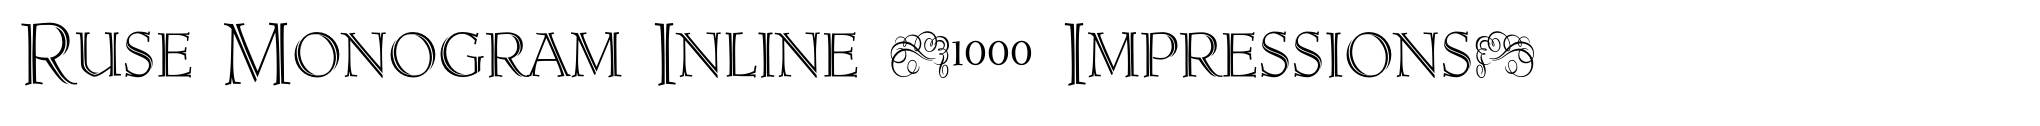 Ruse Monogram Inline (1000 Impressions) image